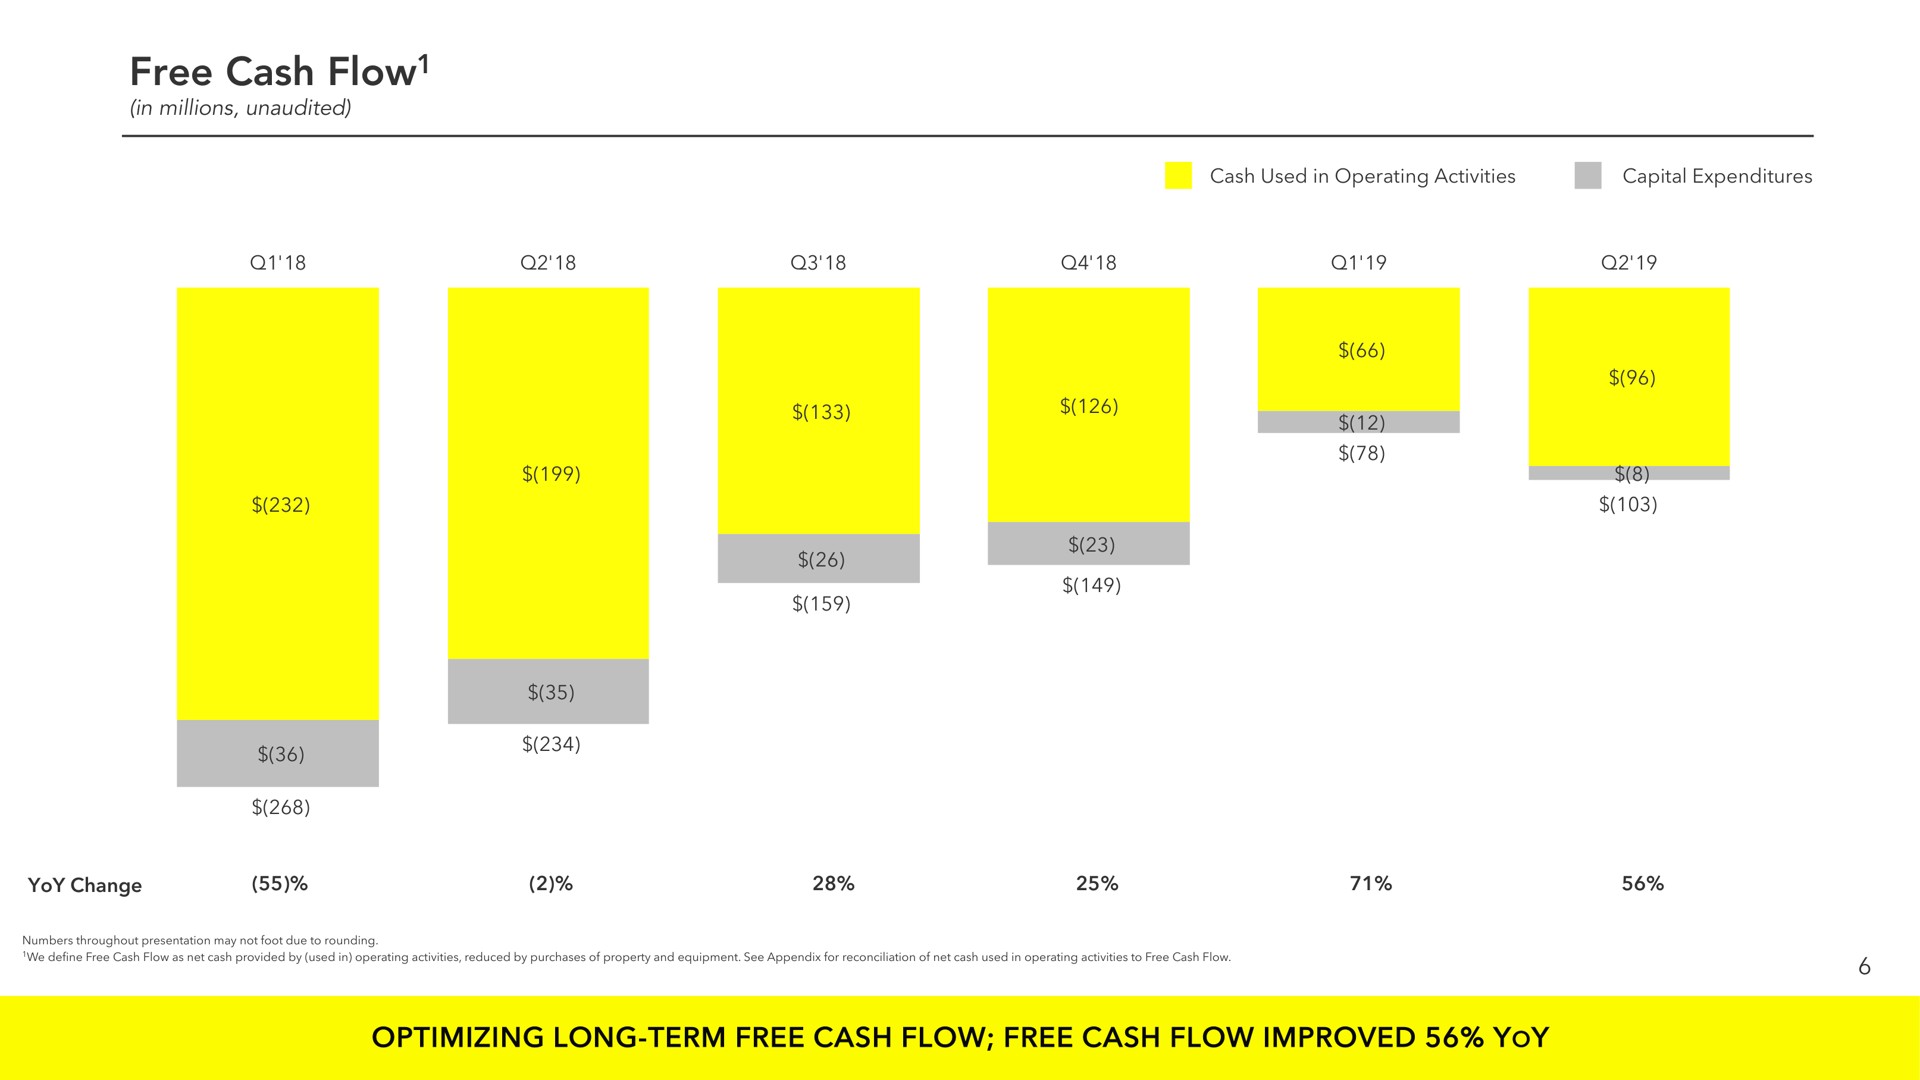 free cash flow optimizing long term free cash flow free cash flow improved yoy | Snap Inc